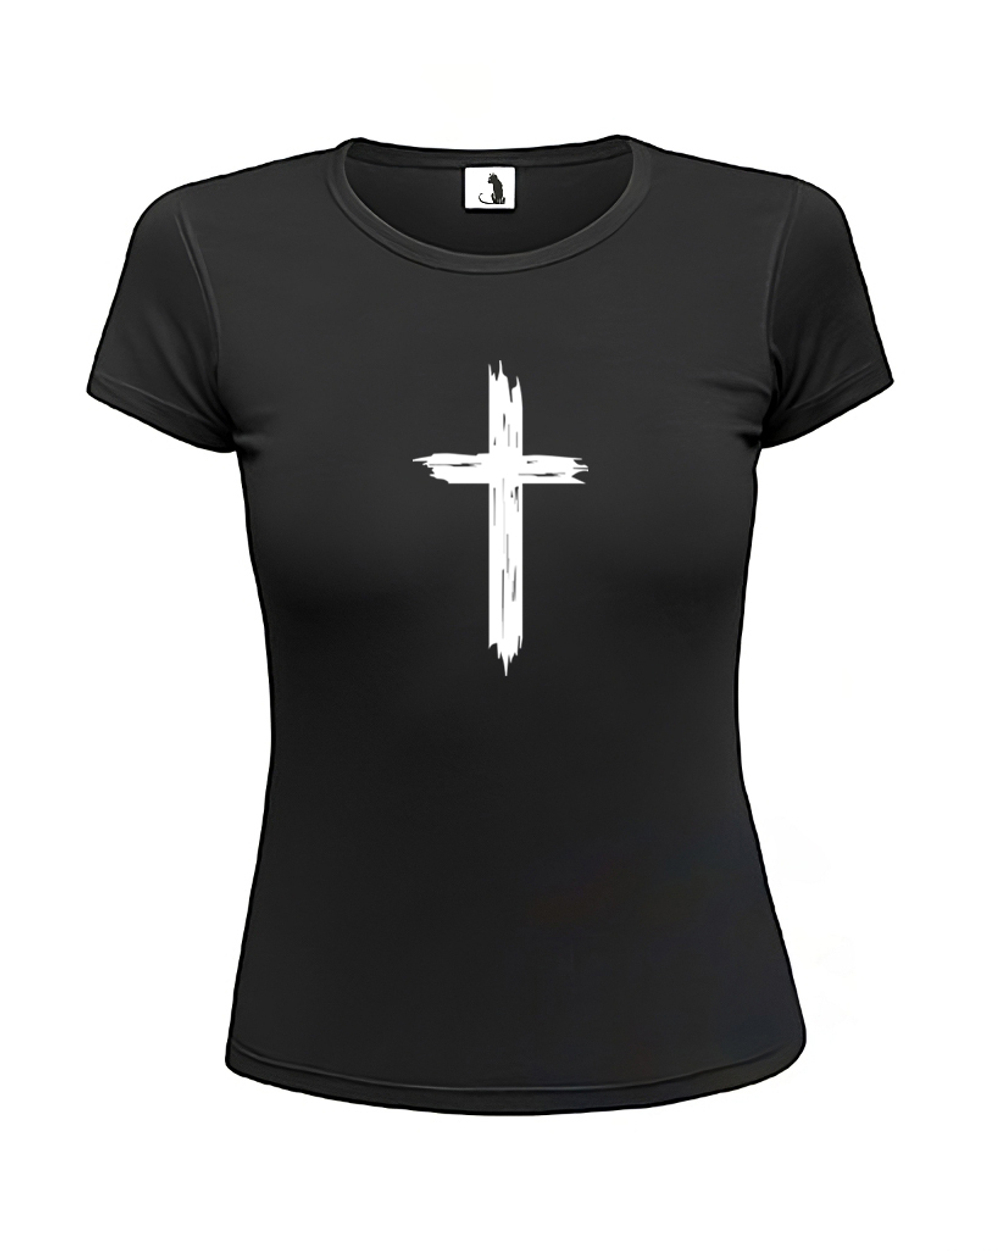 Футболка с крестом женская приталенная черная